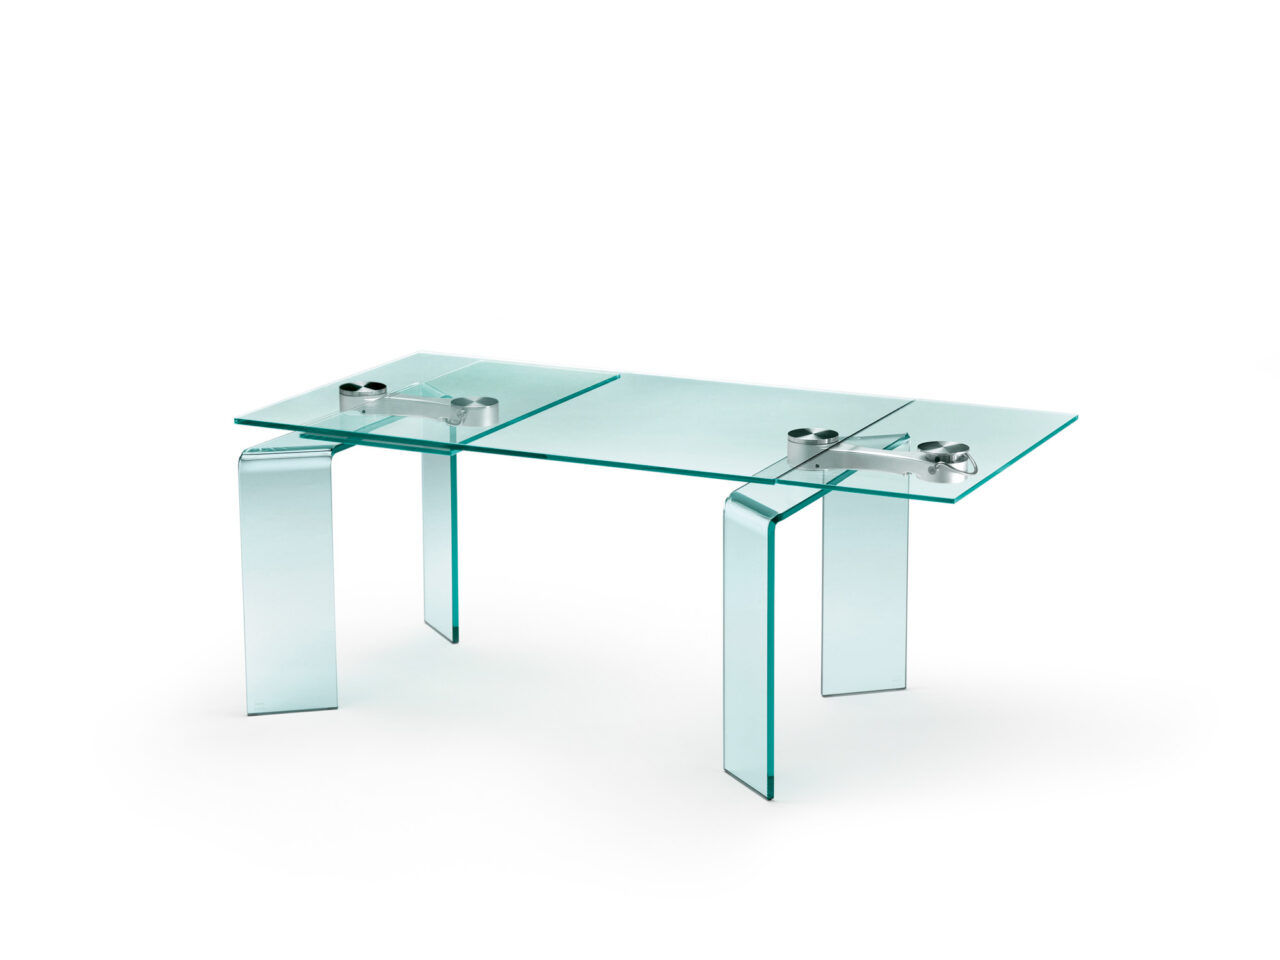 Ray Plus è un tavolo da pranzo progettato da Bartoli Design e proposto da Peverelli